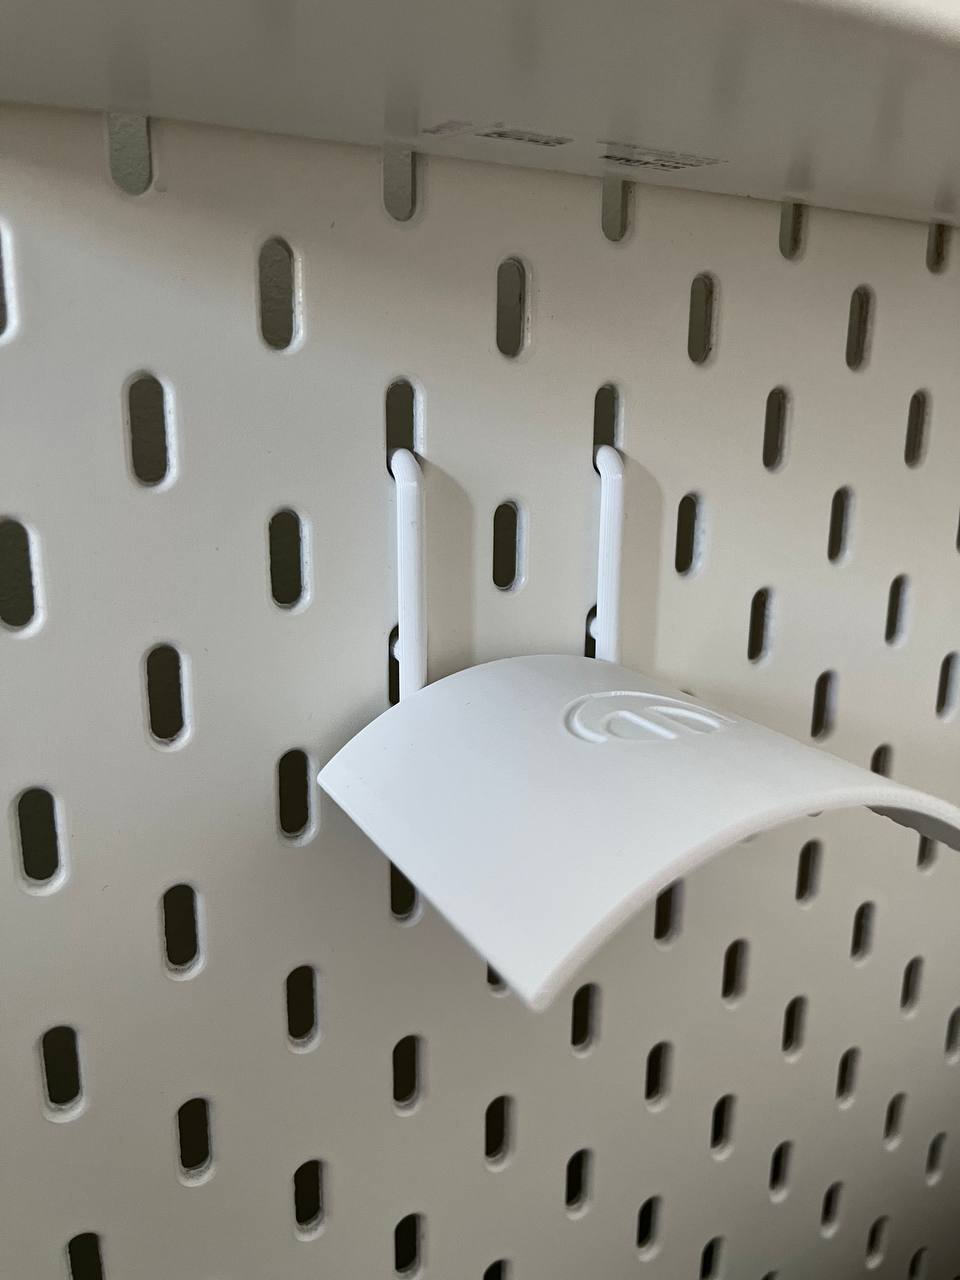 Printable Hook for IKEA Skadis Headphones Rest